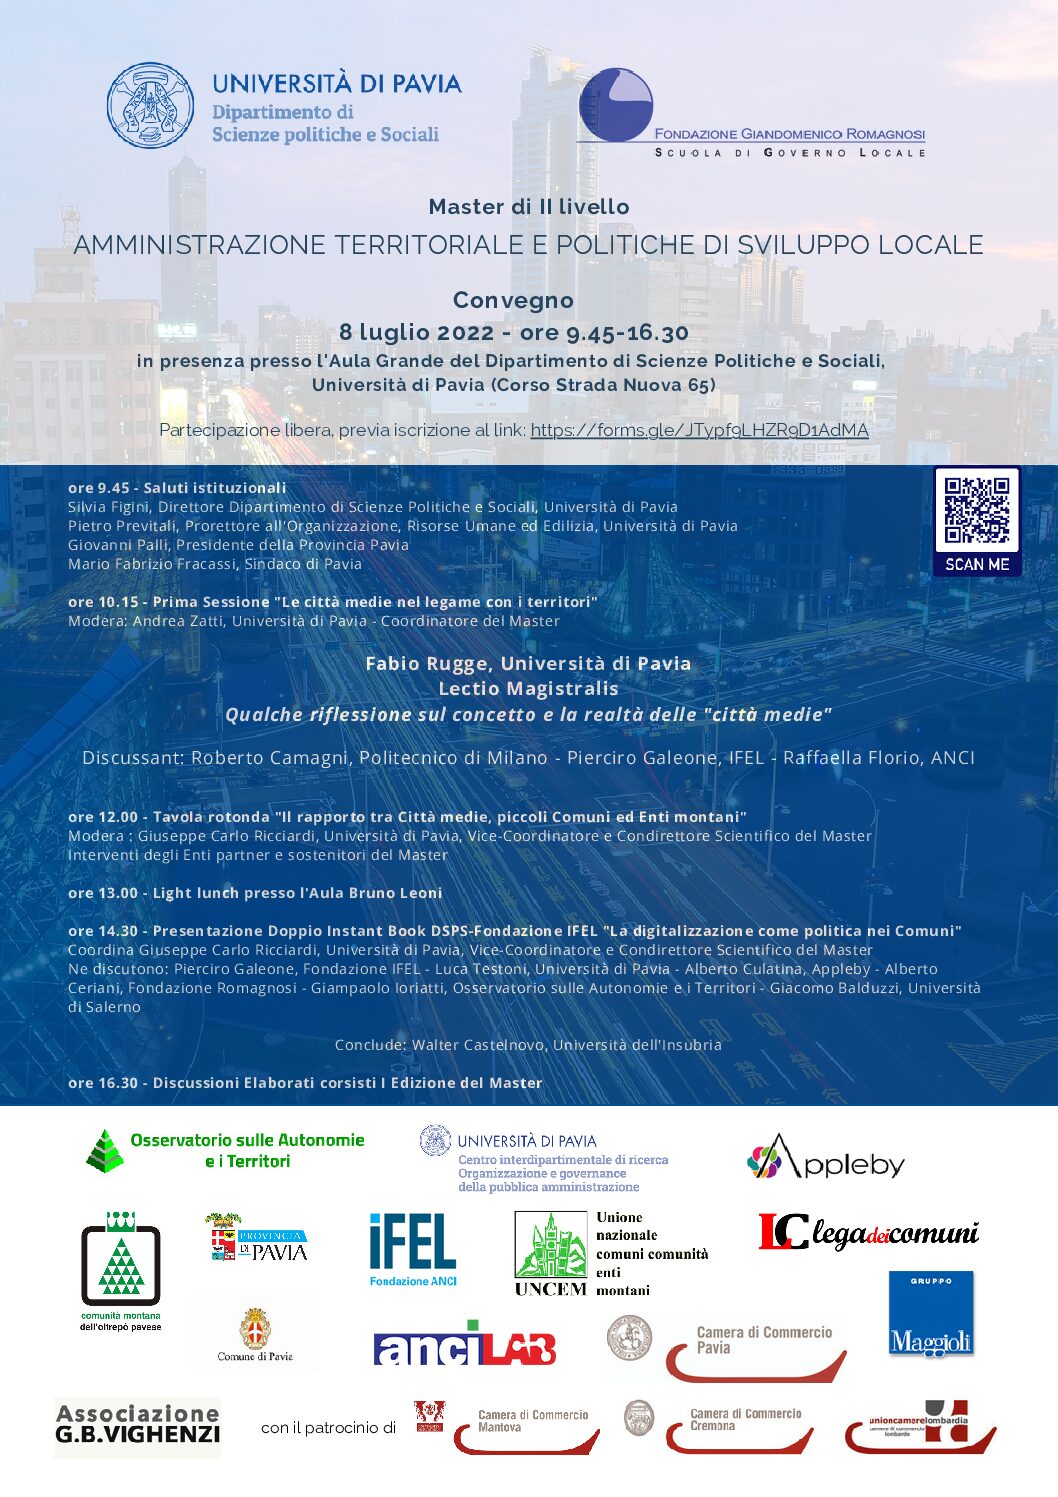 8 luglio 2022, presso Aula Grande del Dipartimento di Scienze Politiche, Università di Pavia, Convegno di apertura della II edizione del Master a.a. 2021-2022